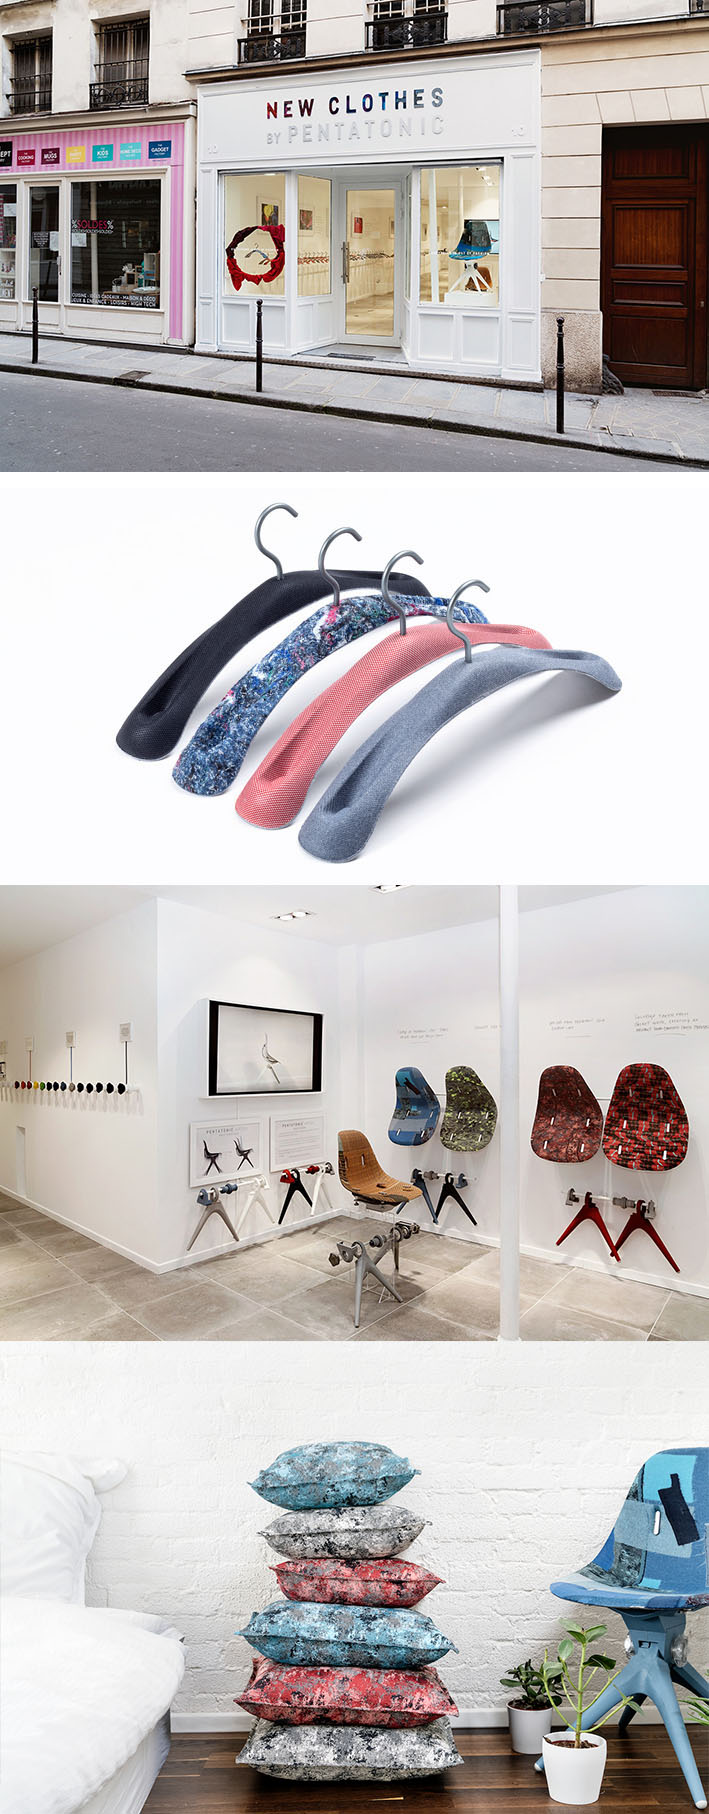 Estúdio de design Pentatonic transforma resíduos têxteis em belos móveis e objetos stylo urbano